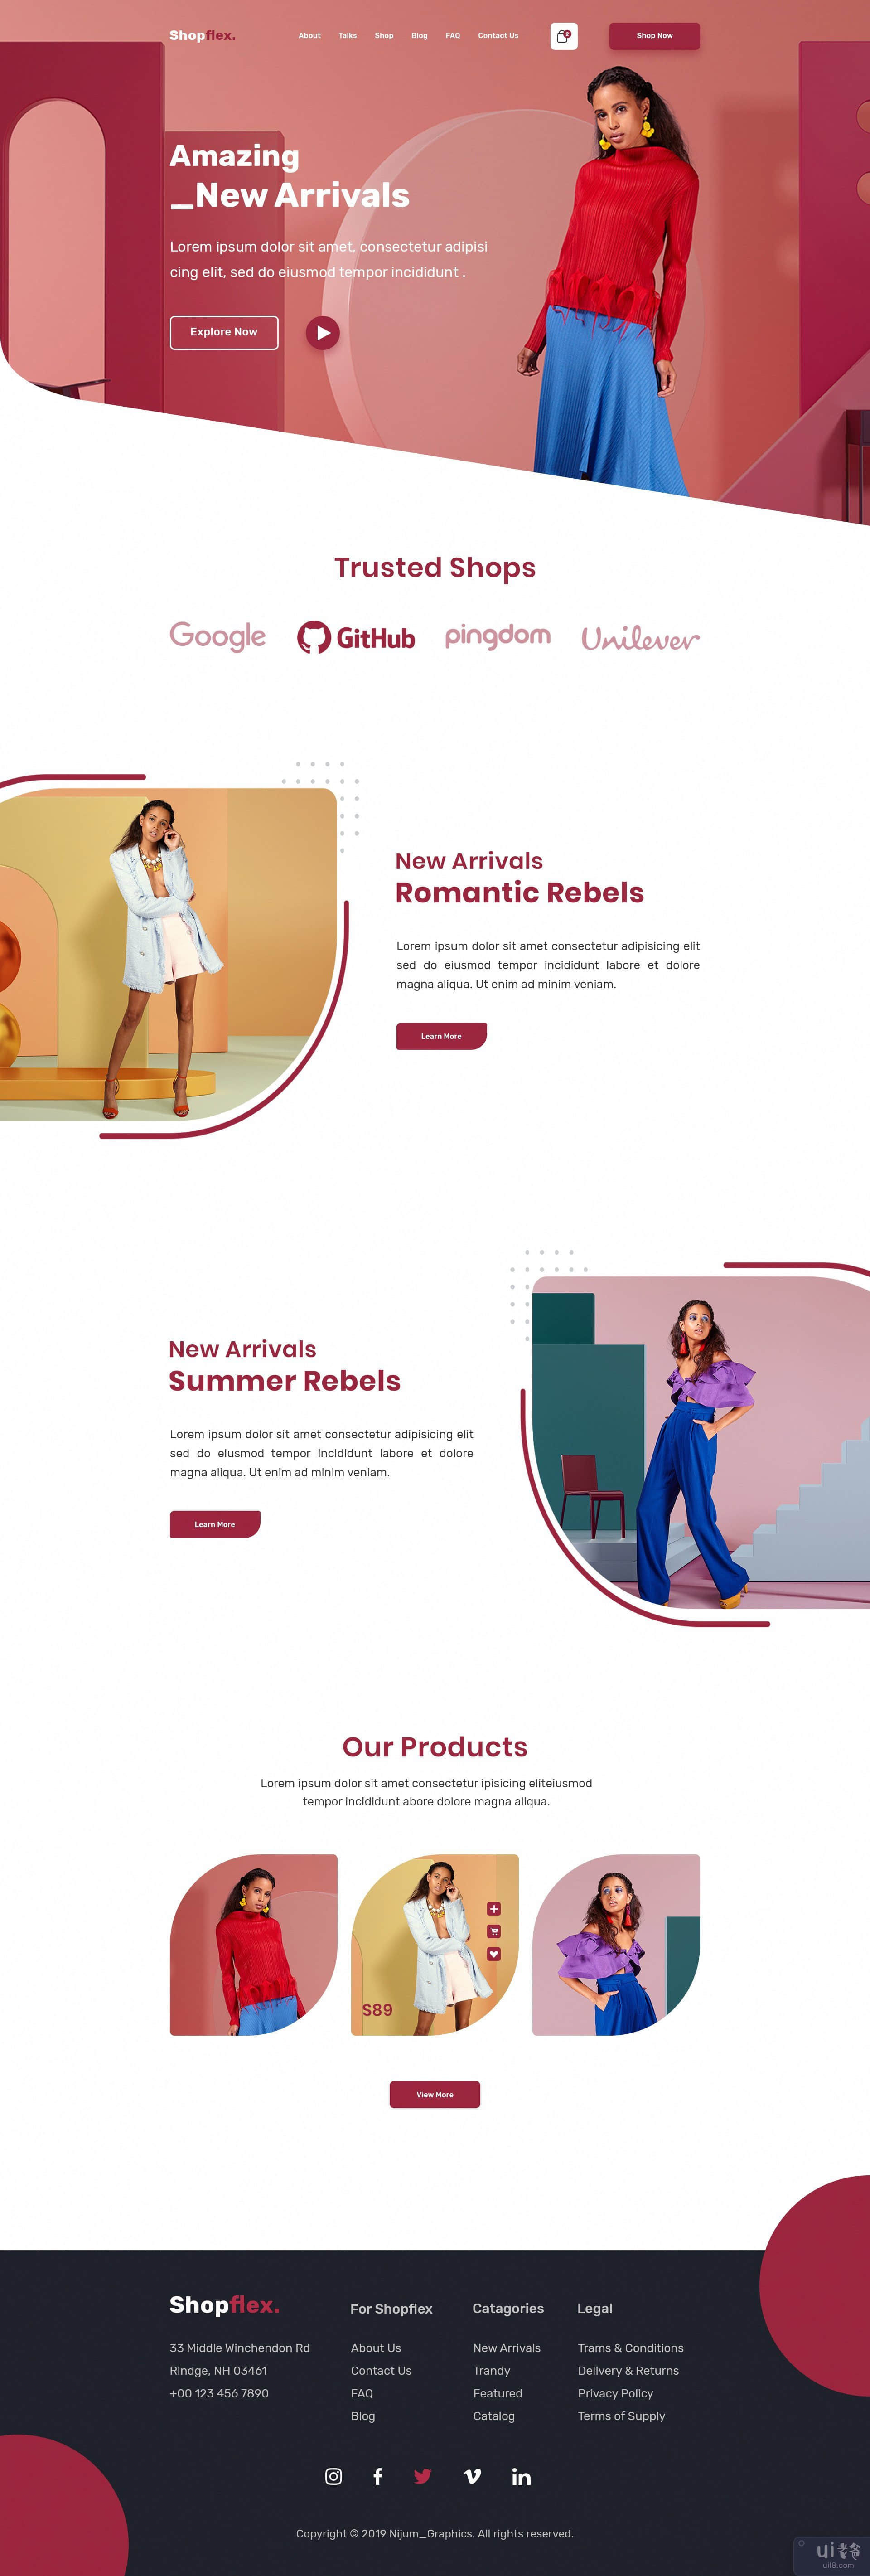 Shopflex - 时装店主页(Shopflex - Fashion Store Homepage)插图